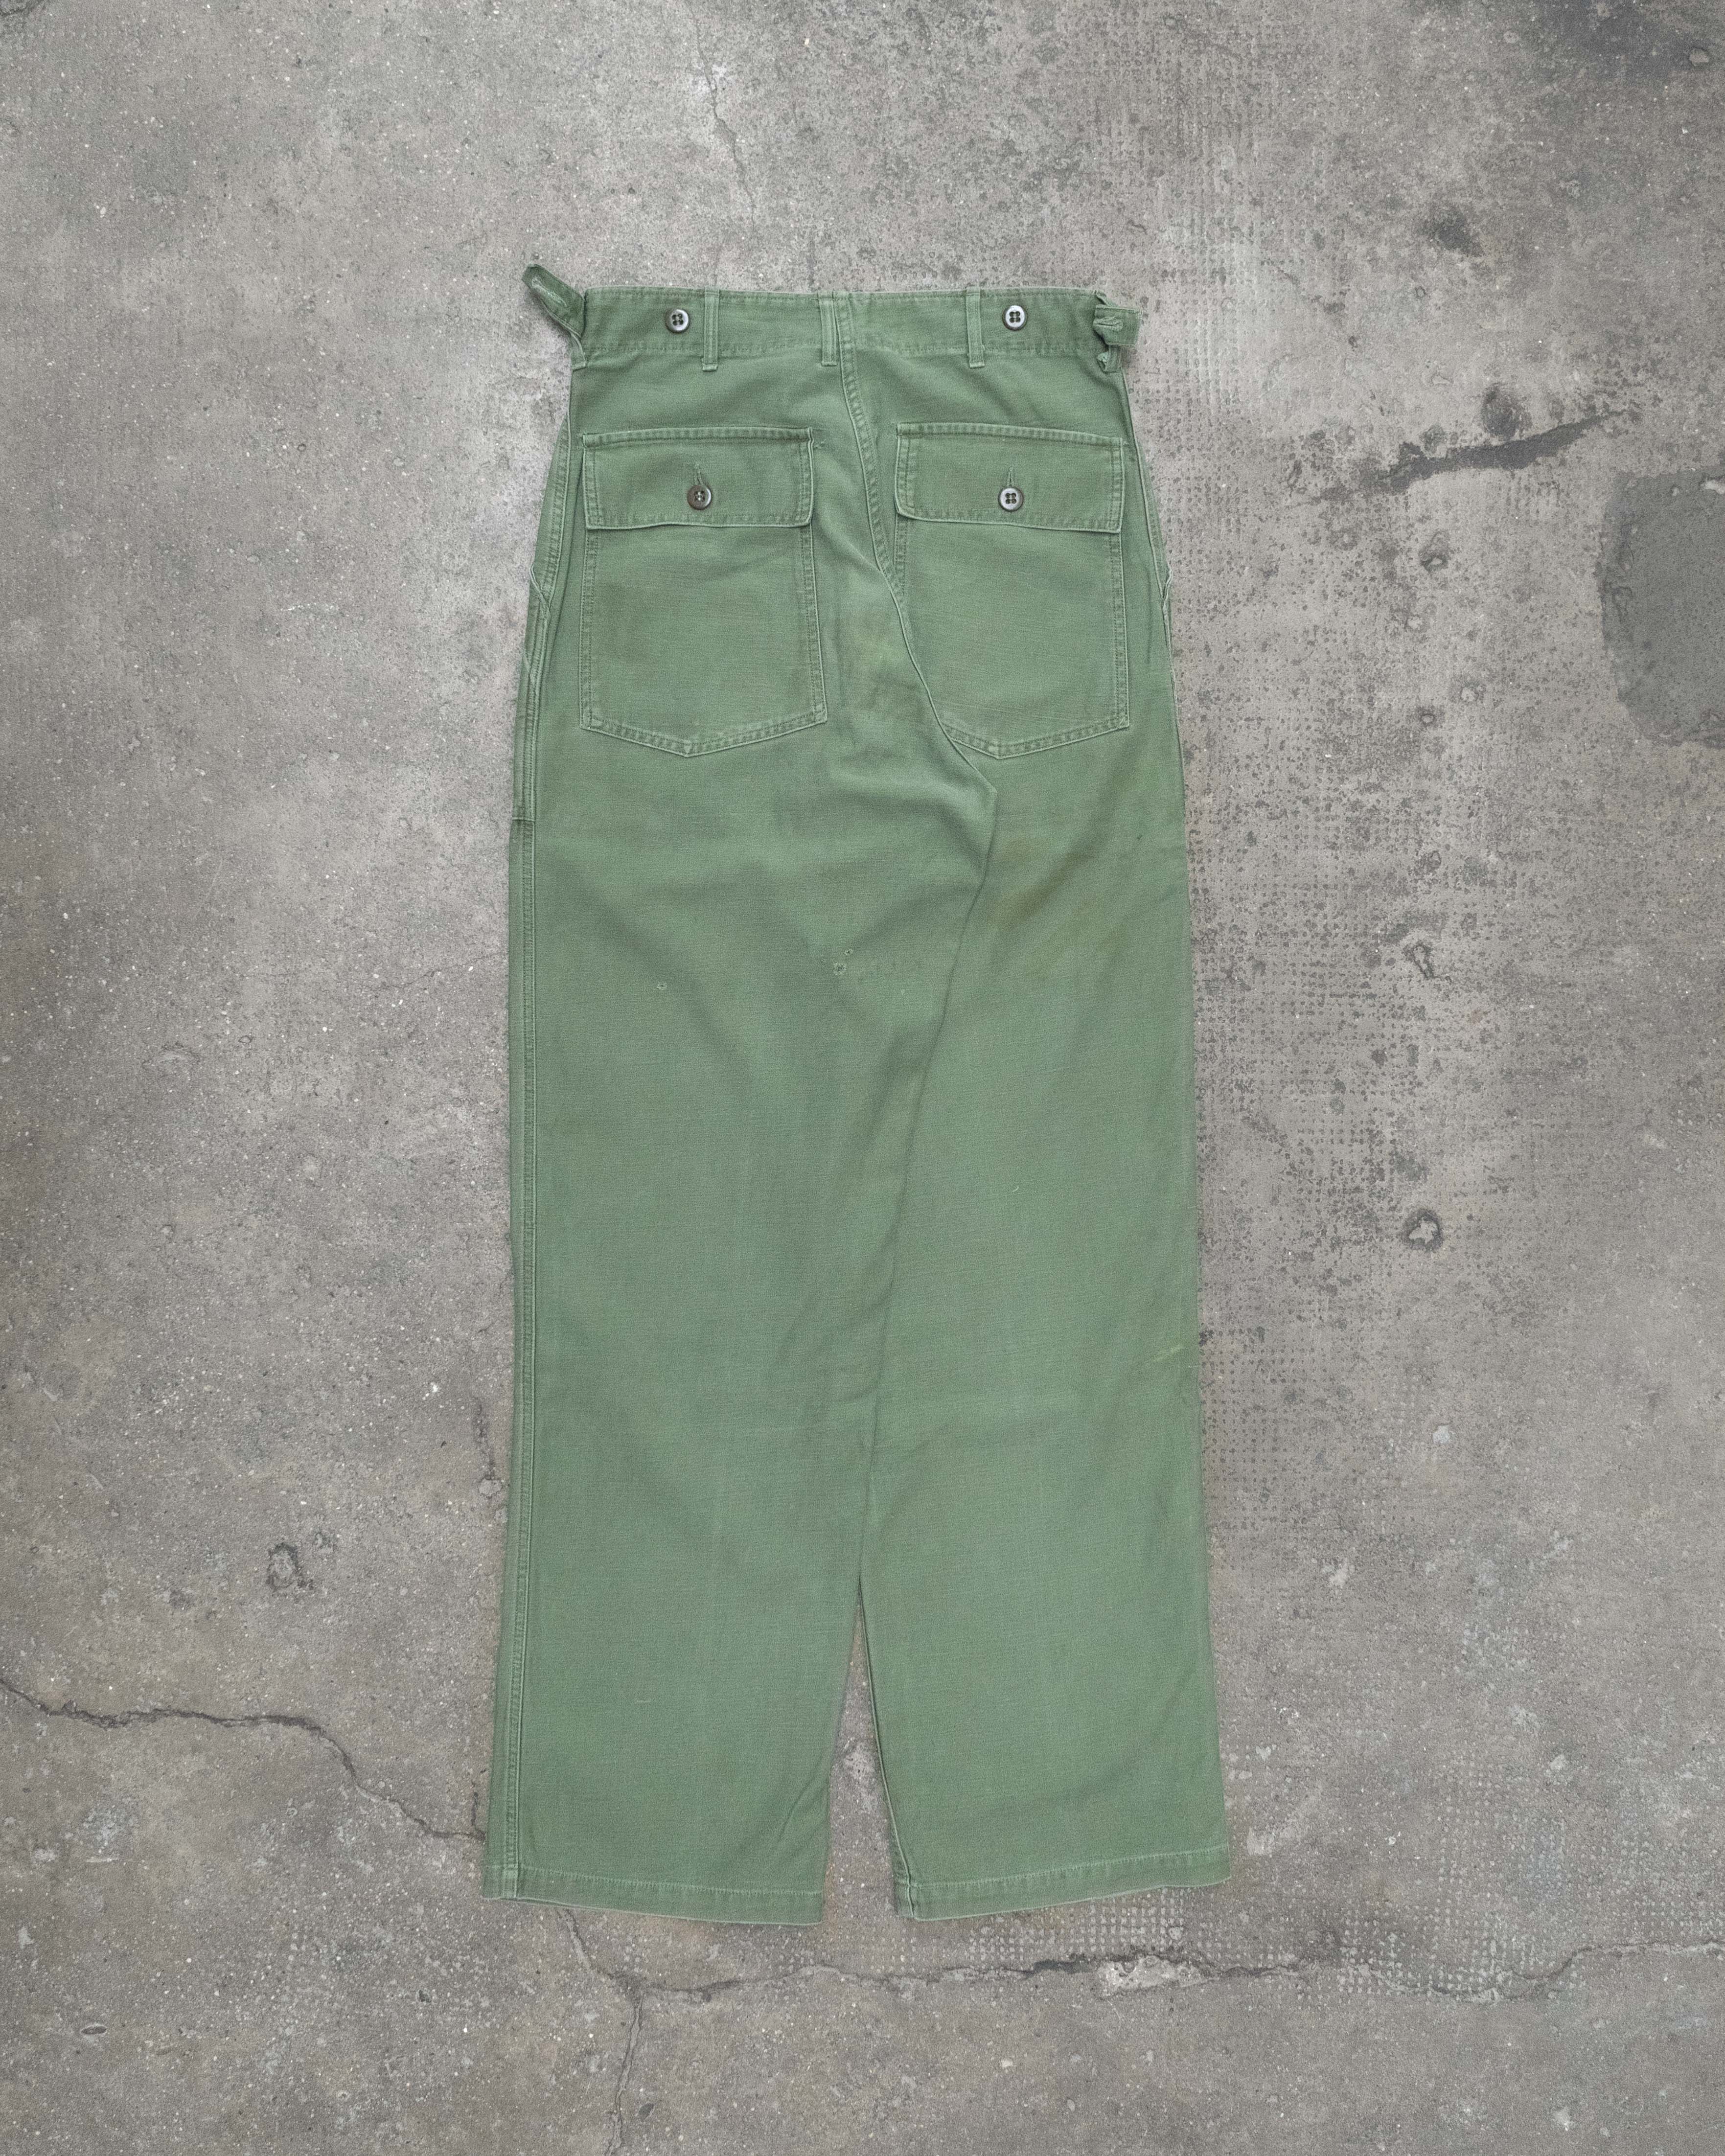 U.S. Military - OG-507 Baker Pants